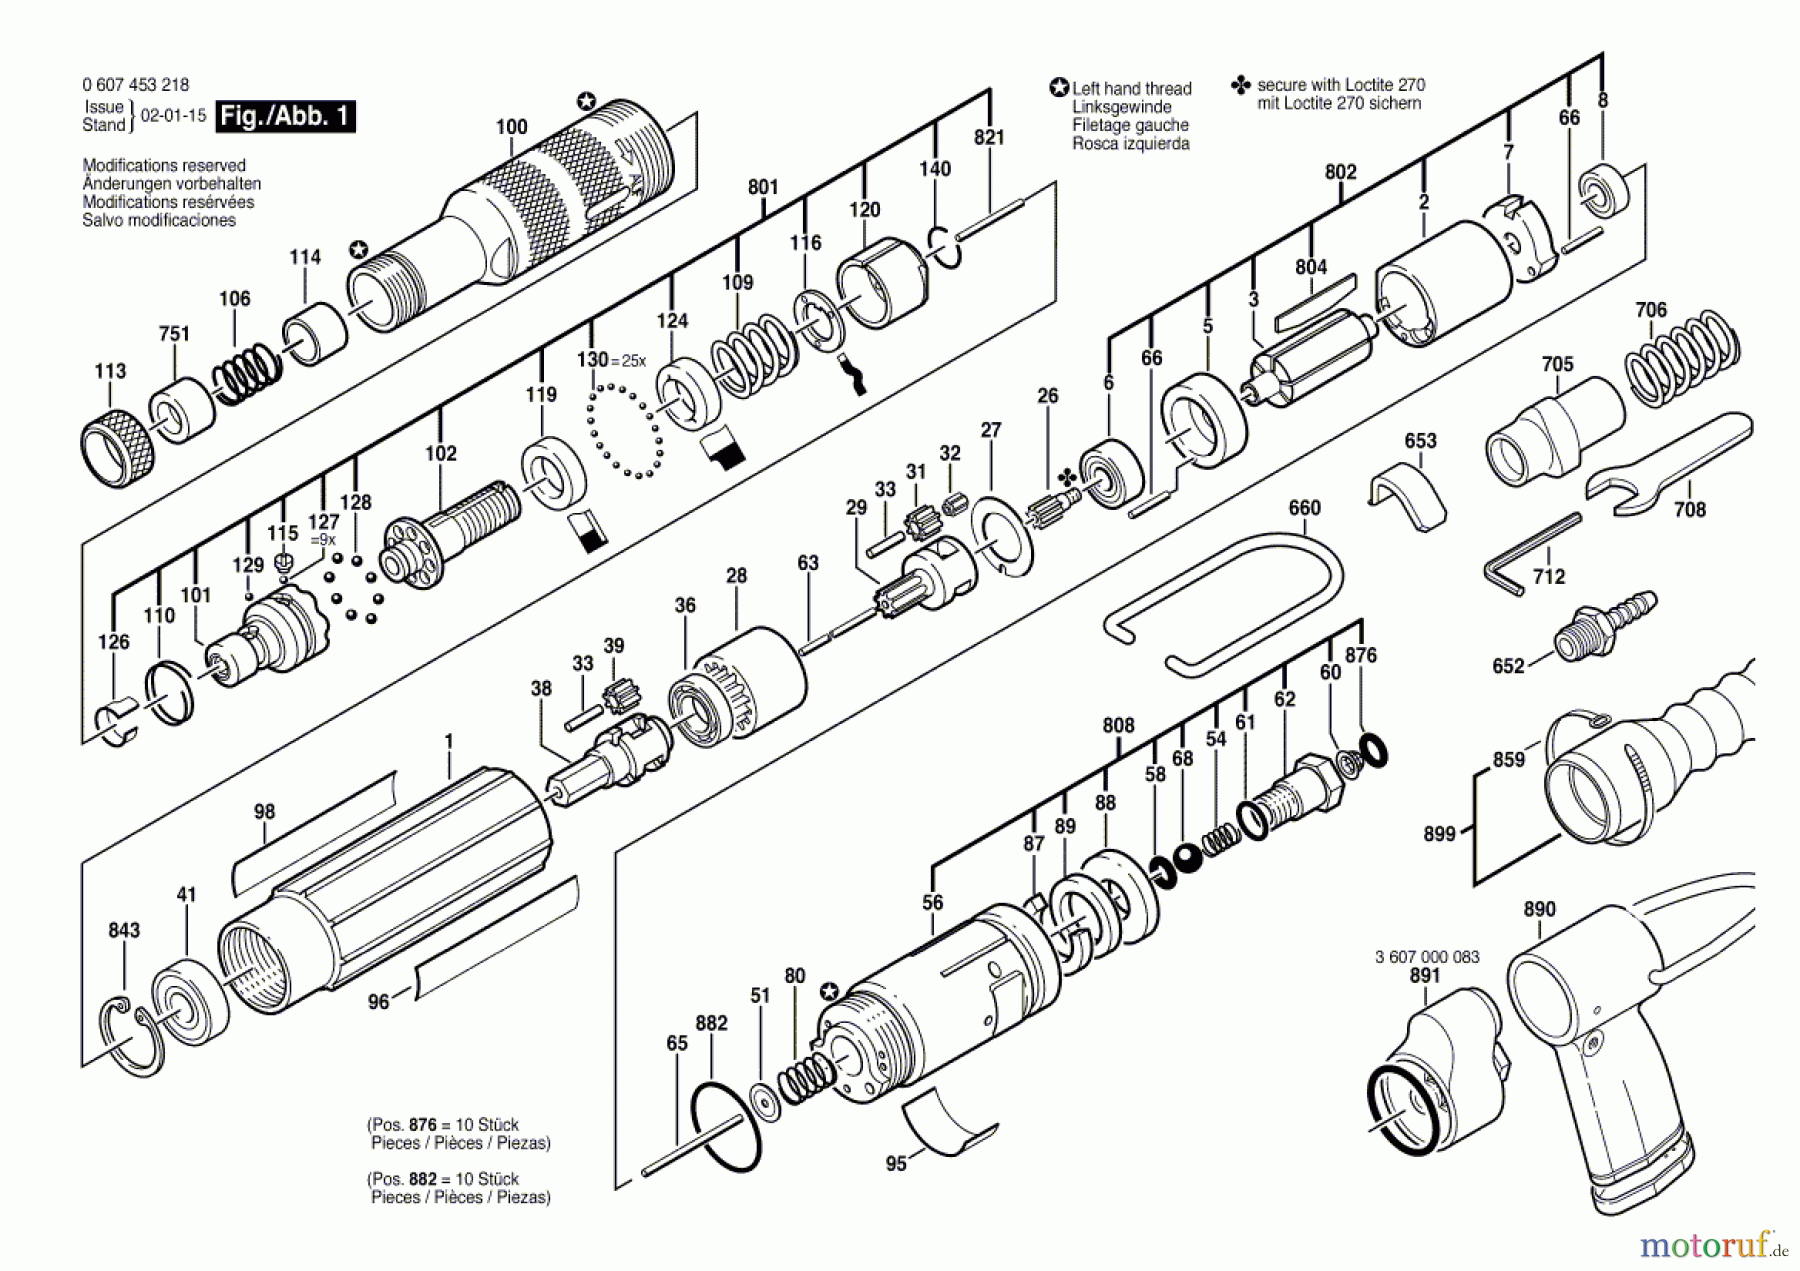  Bosch Werkzeug Pw-Schrauber-Ind 180 WATT-SERIE Seite 1